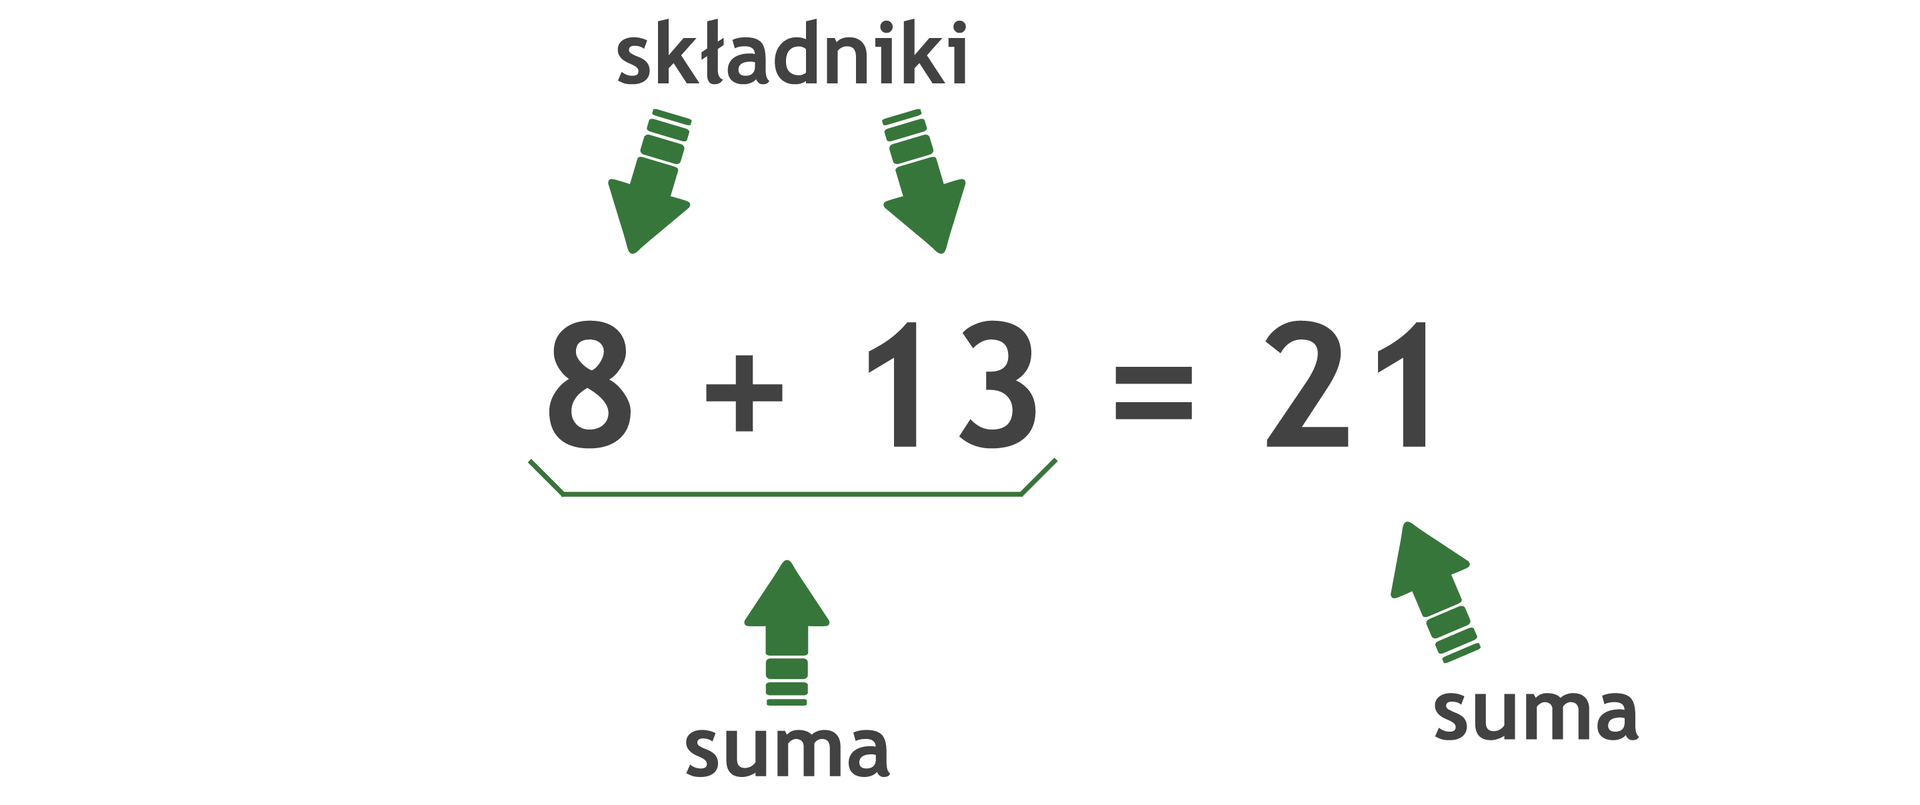 Ilustracja przedstawia jak nazywają się poszczególne liczby w dodawaniu. Zapisano działanie: 8 dodać 13 równa się 21. Liczby osiem oraz 13 podpisano jako składniki. Wyrażenie 8 dodać 13 opisano jako suma. Wynik dodawania, czyli liczba 21 również jest opisana jako suma.